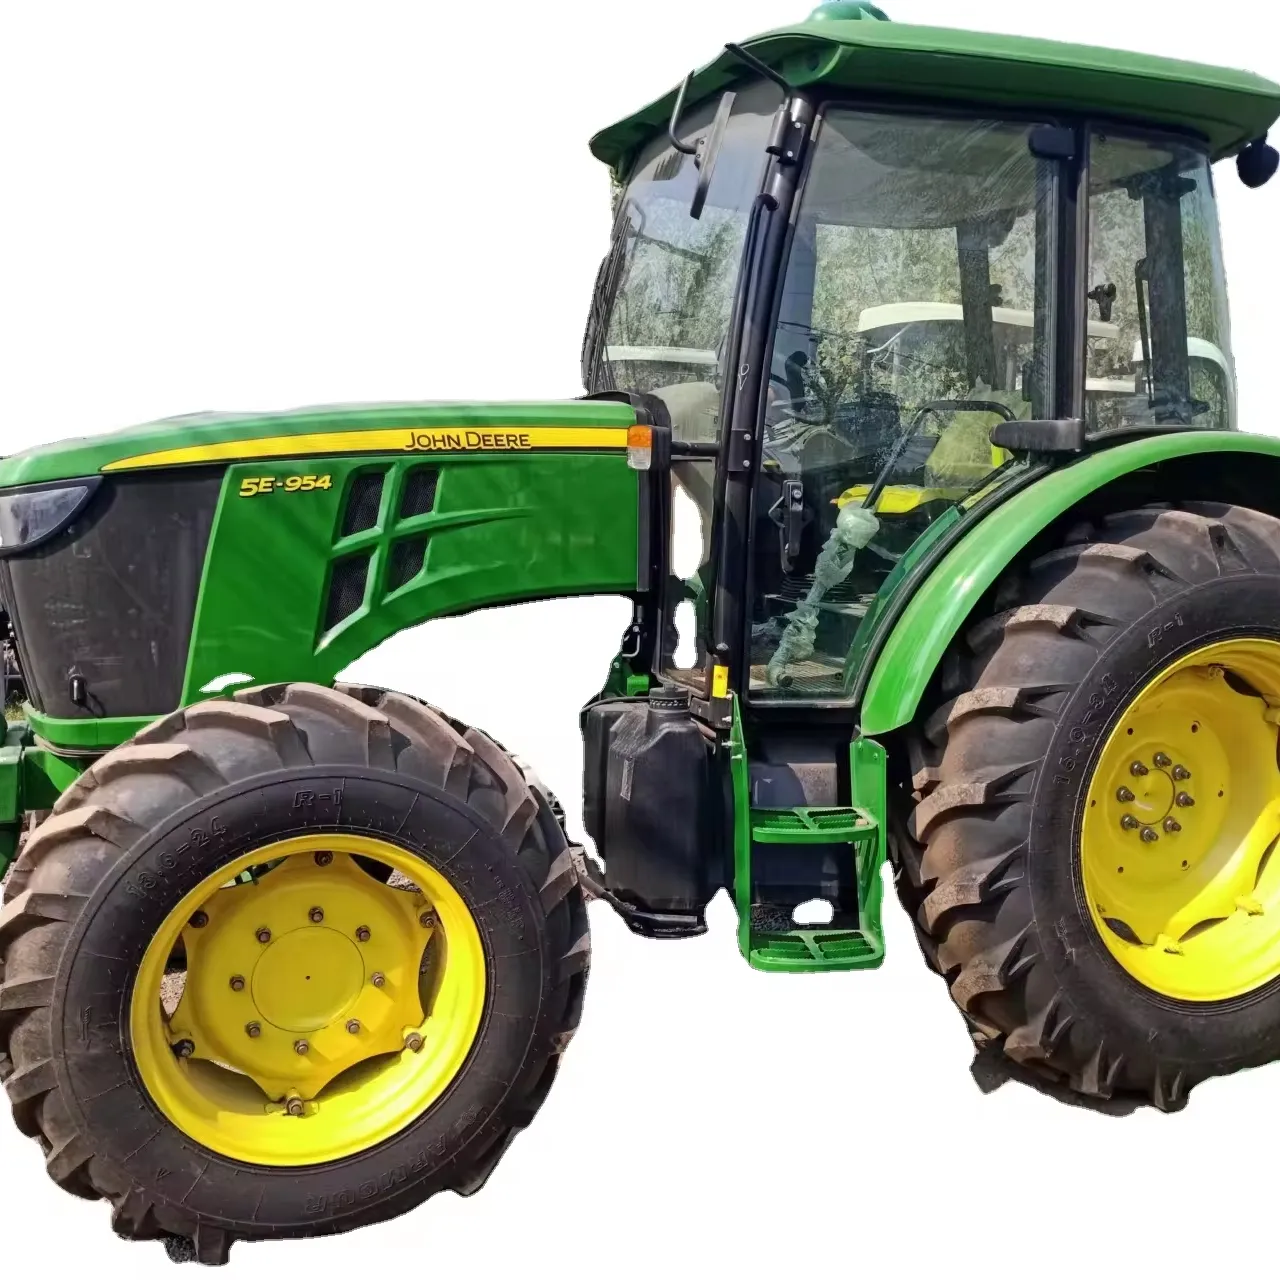 Tracteur agricole d'occasion J Deere 5E 954 95HP 4x4WD tracteur agricole compact machines agricoles Massey ferguson MF385